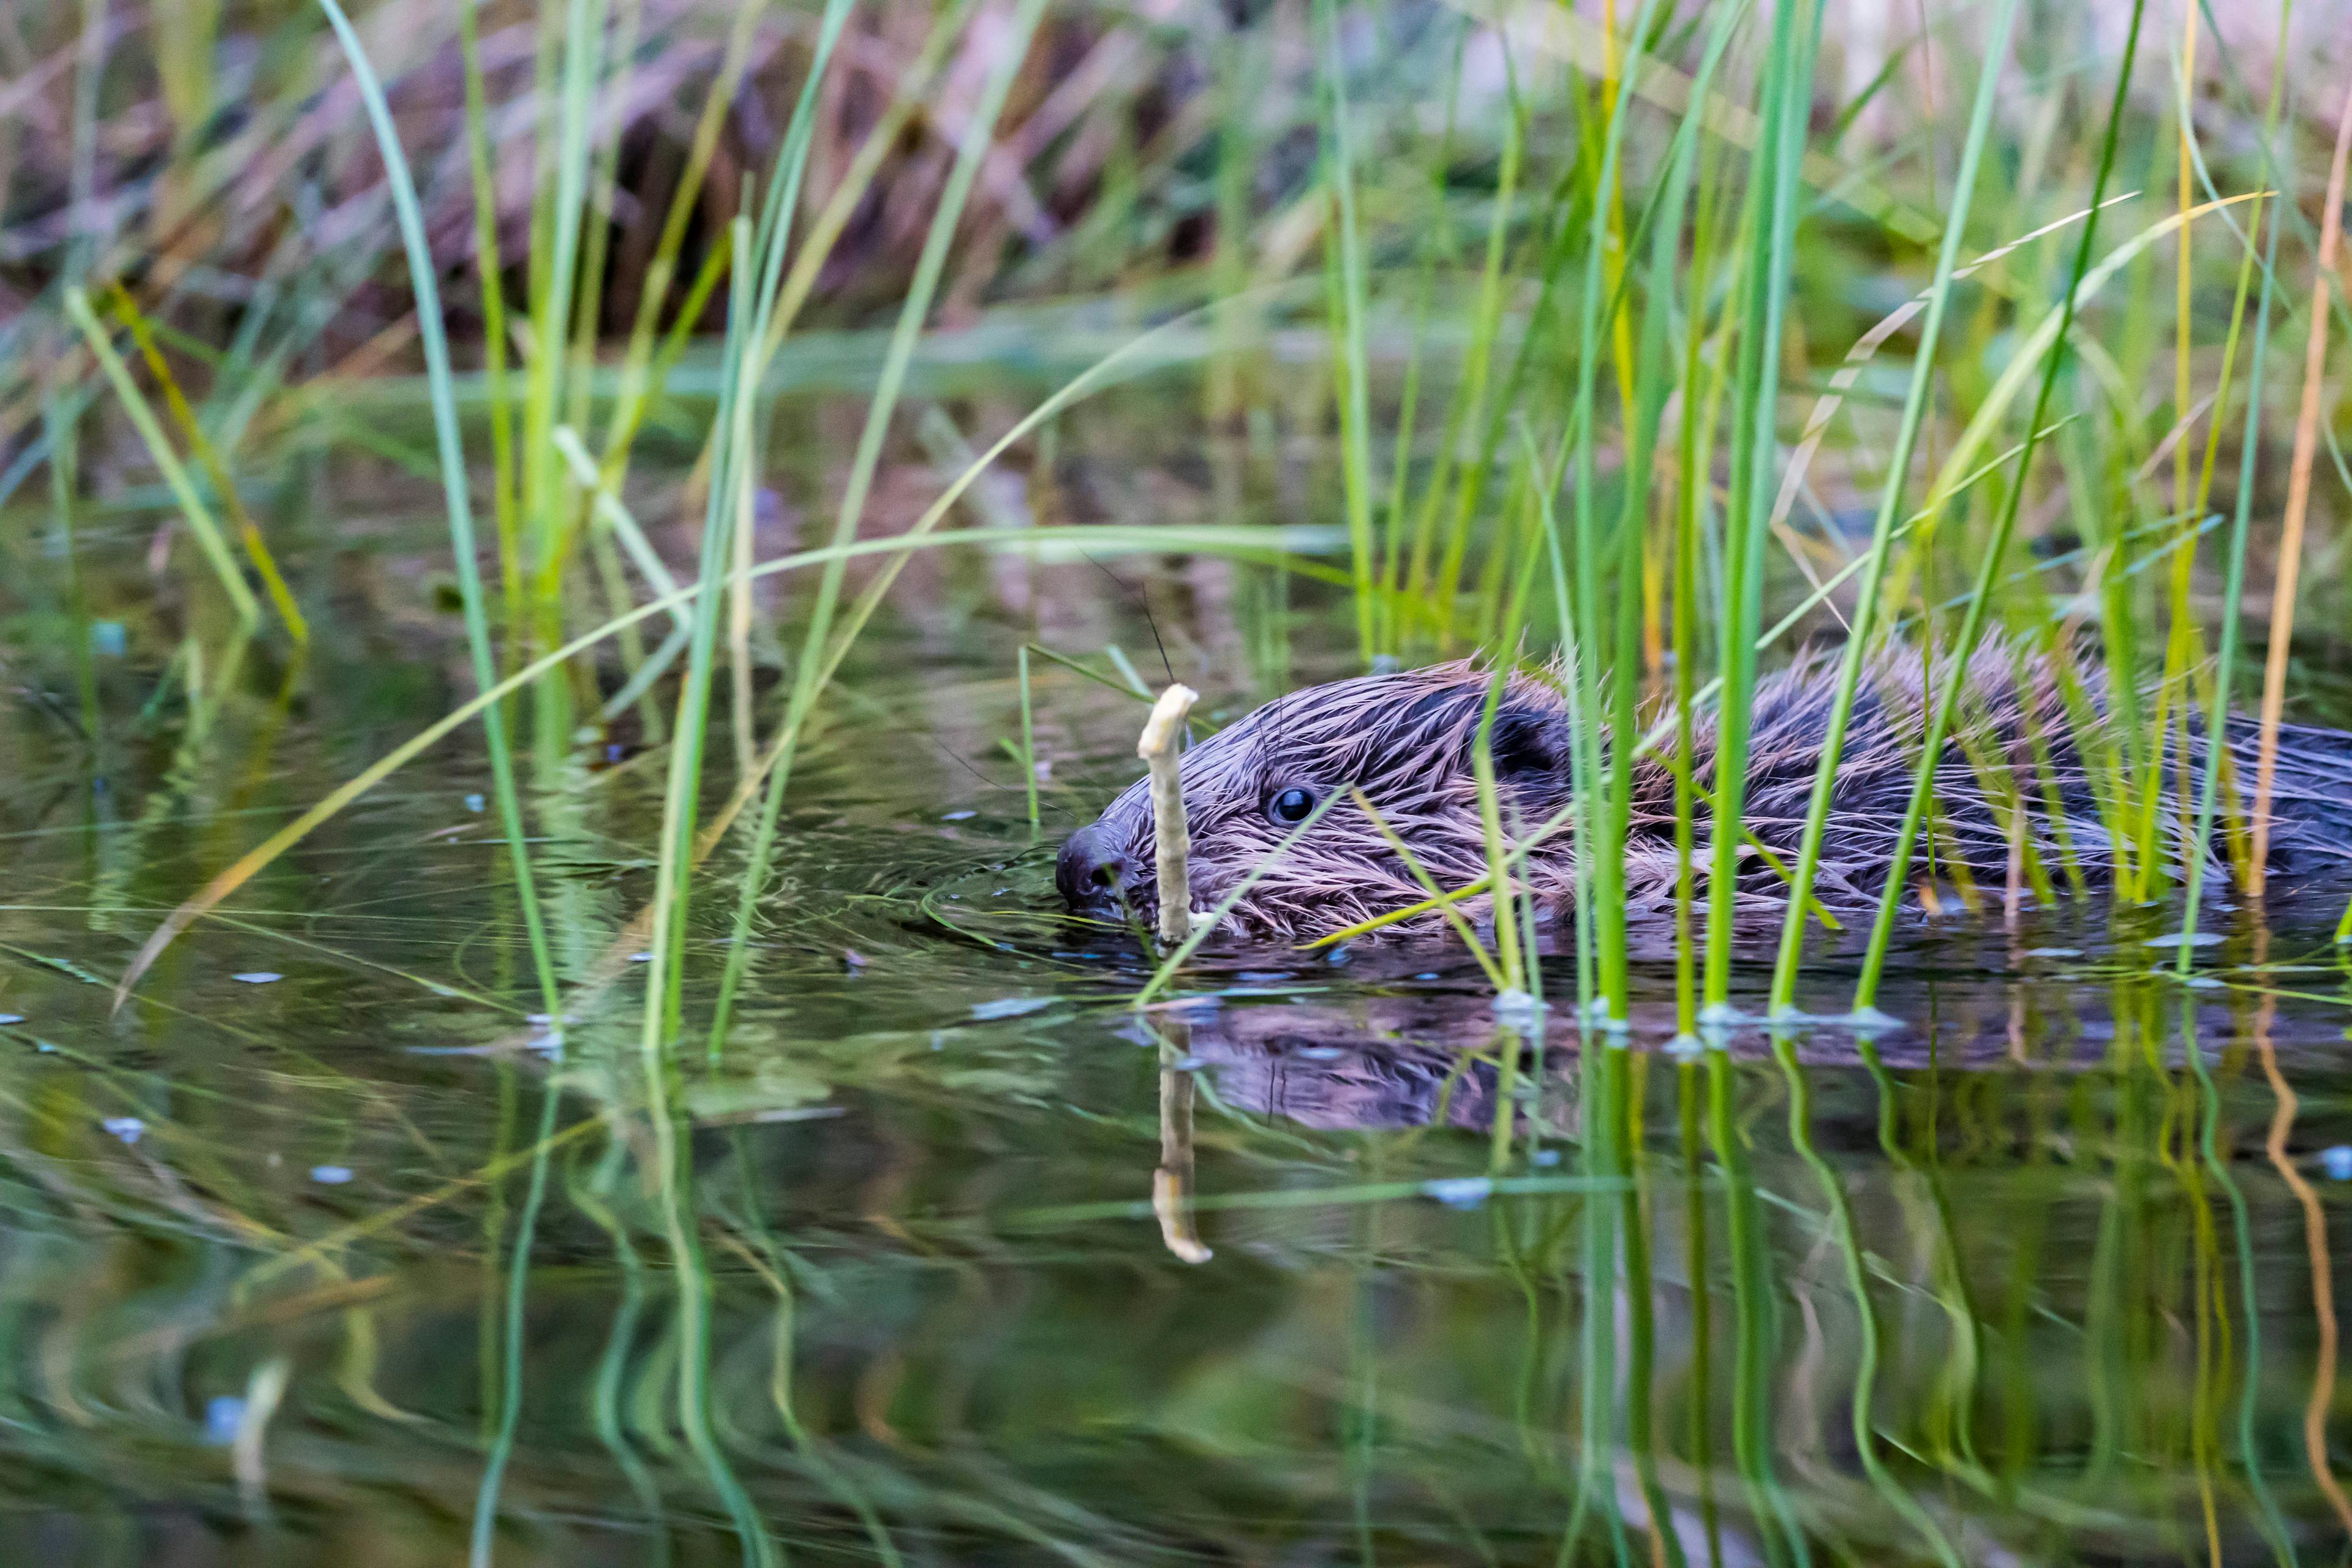 Een klein beverjong met een stok in zijn mond verstopt zich in het gras dat uit het water steekt. Gespot tijdens een beversafari met Nordic Discovery in Zweden.